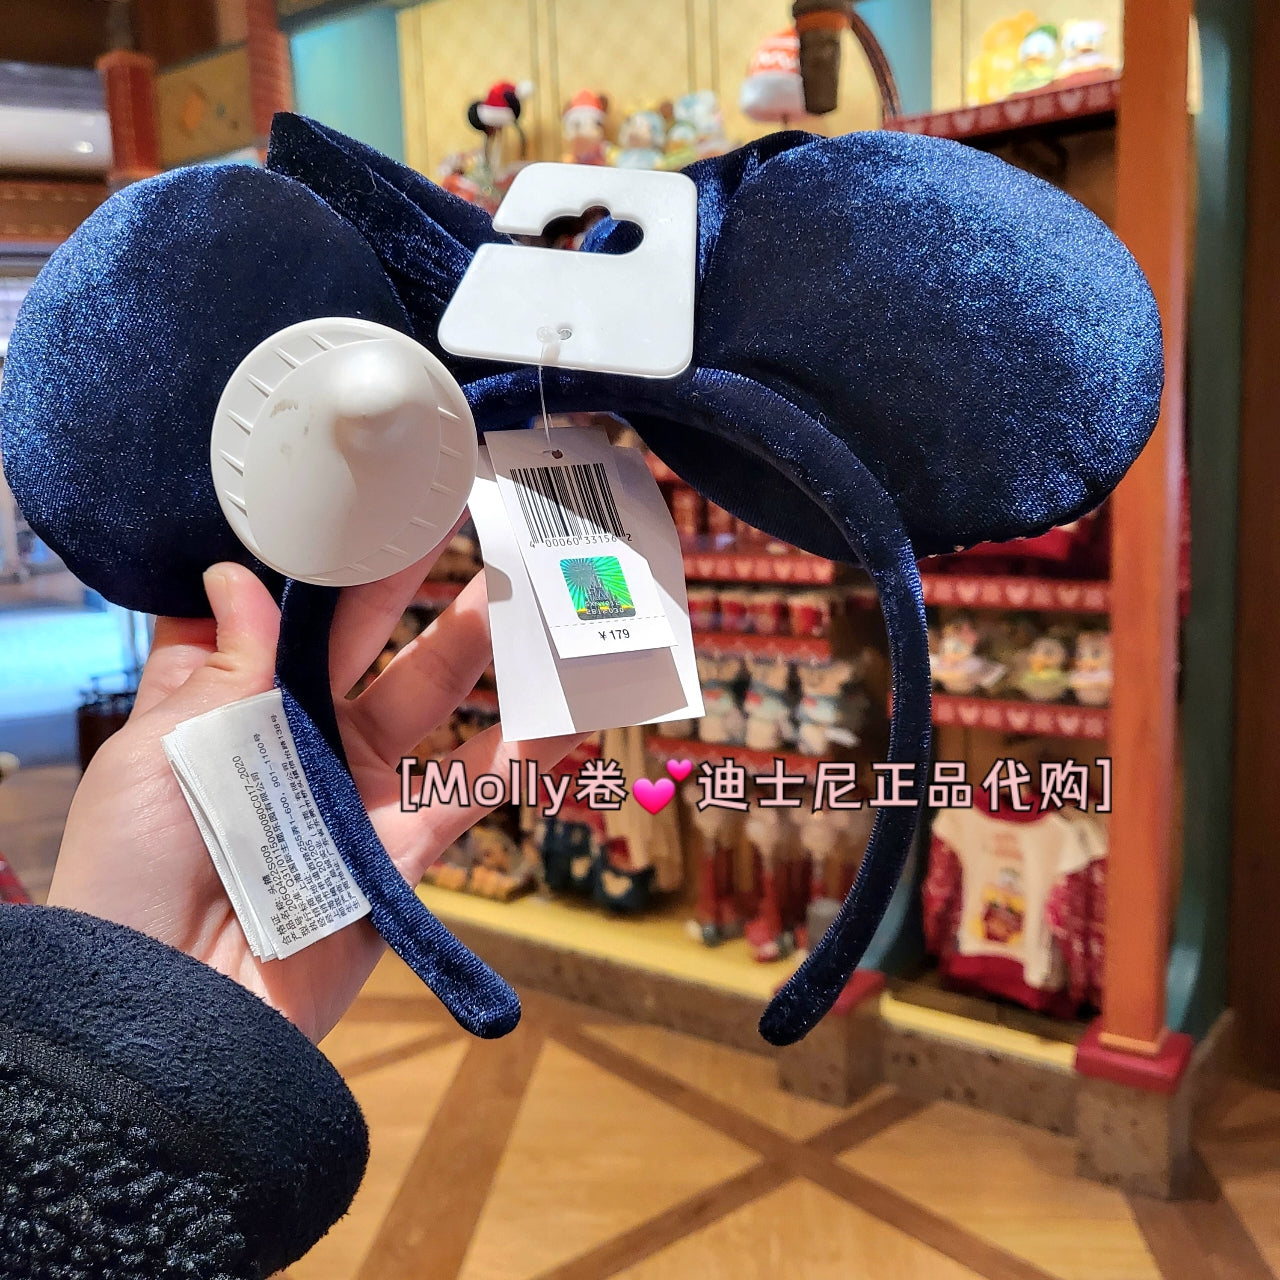 Shanghai Disney Lightning Headband Blue Minnie shining light up ear